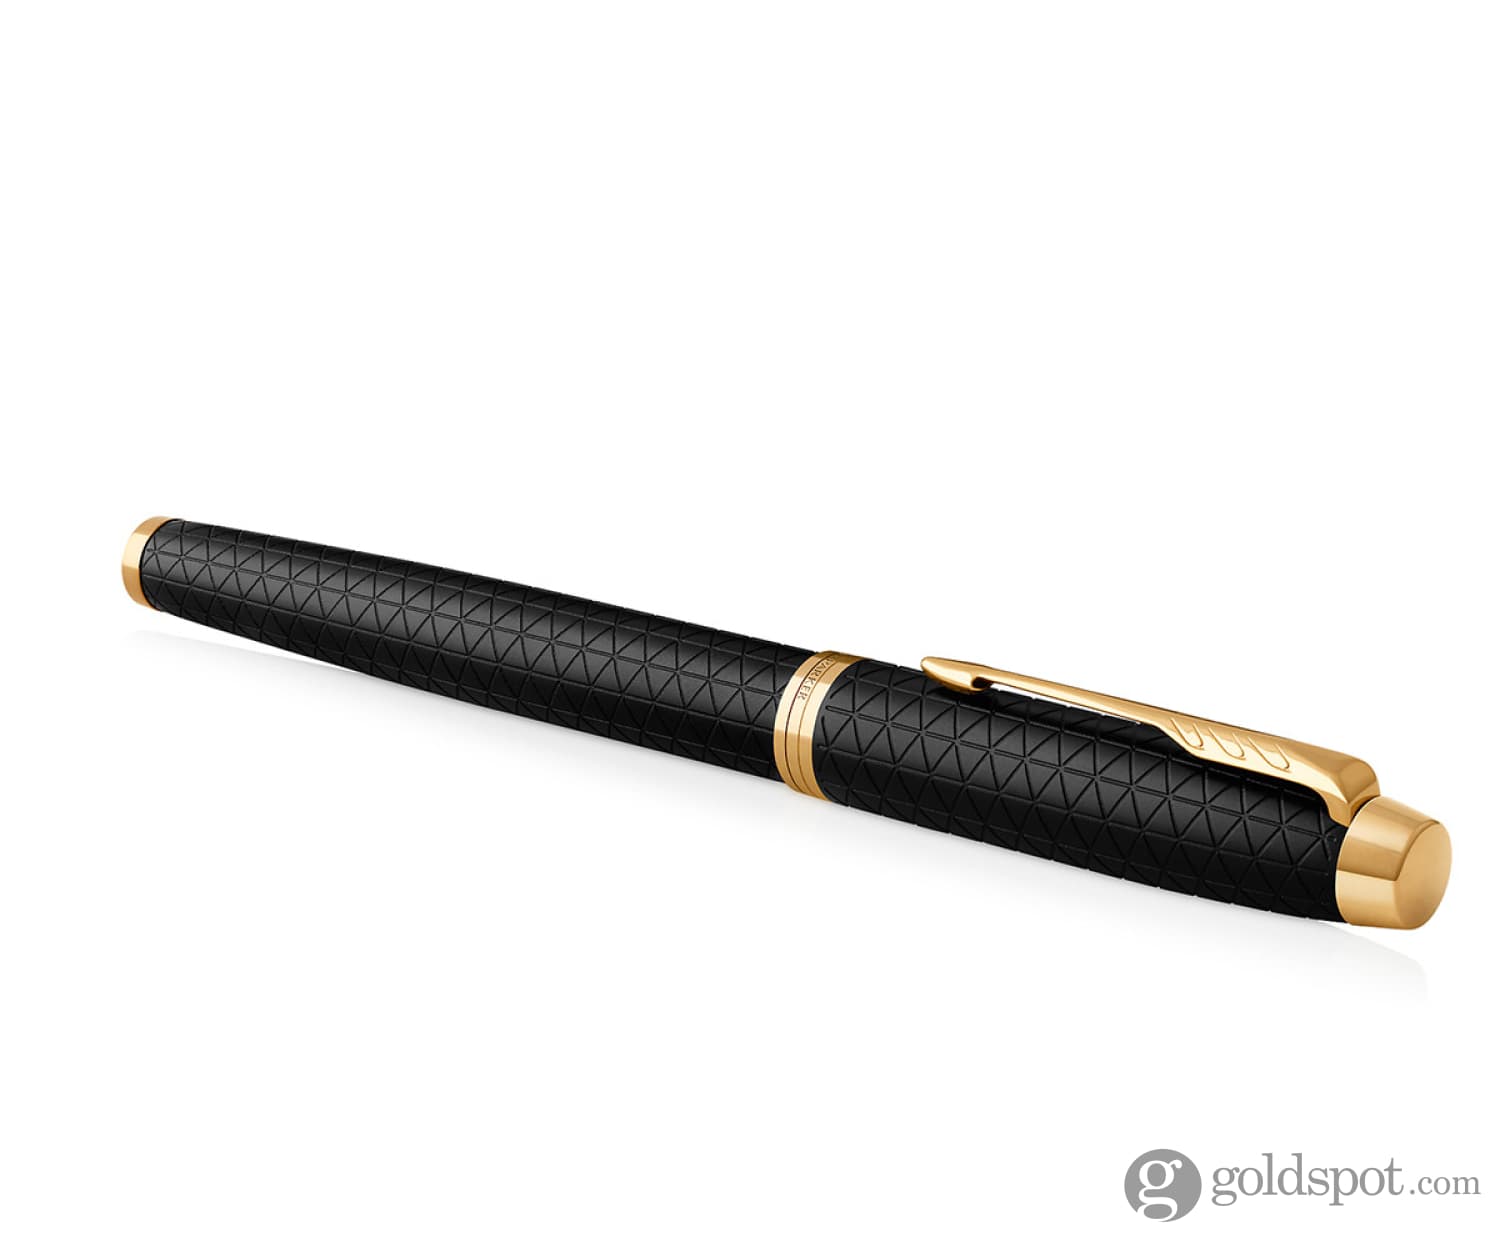 Pimio 901 Paris Exotica Luxury Gold Iridium Fountain Pen With 0.5